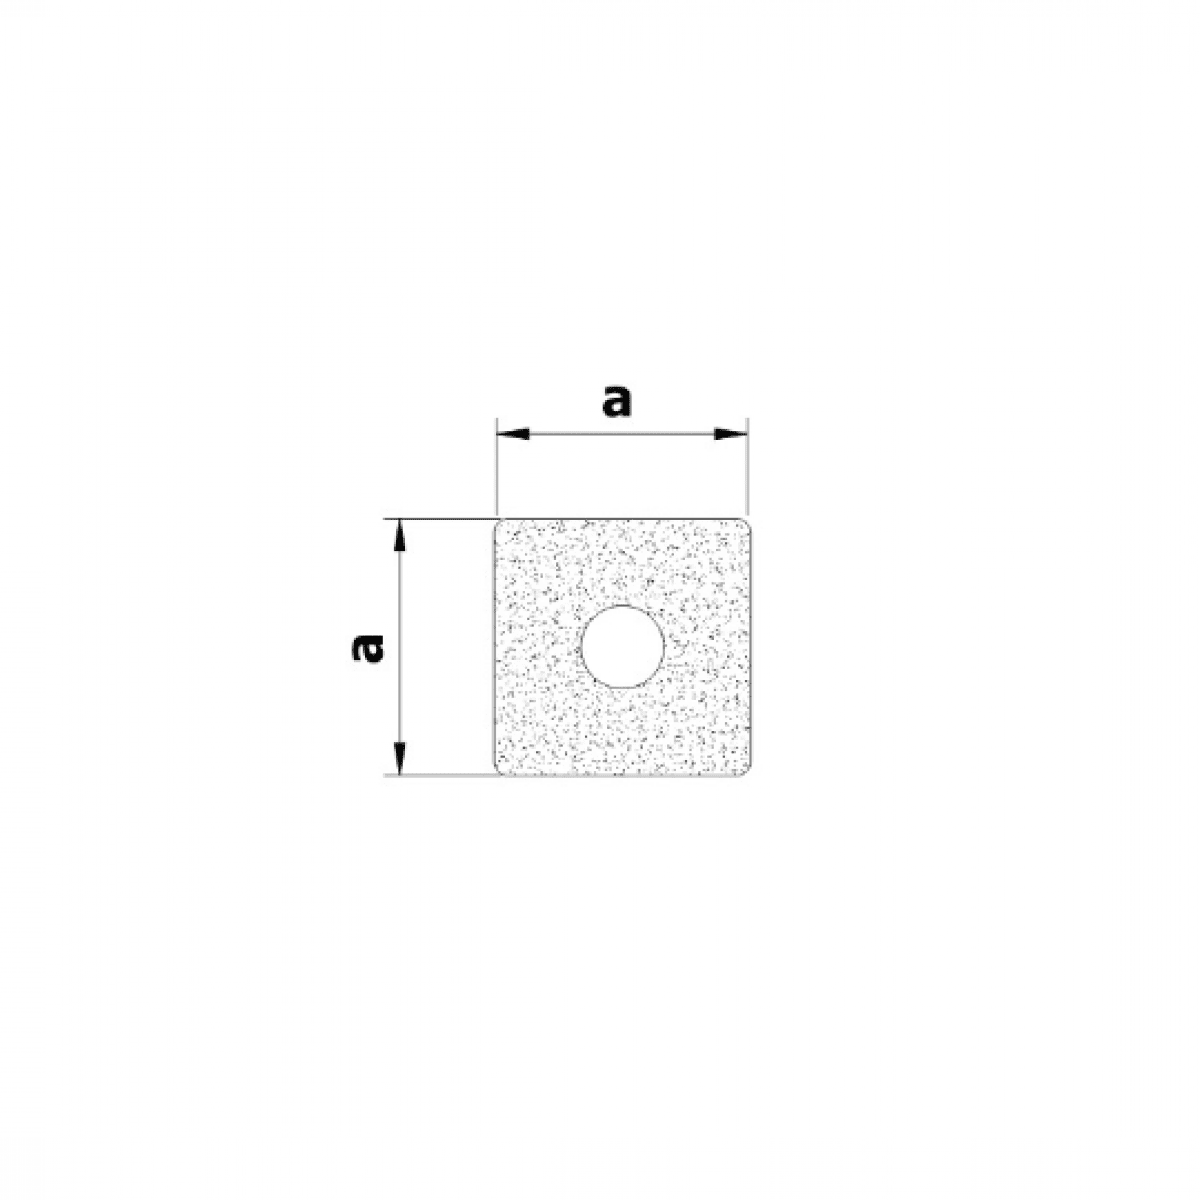 Mikroprofil štvorec s dutinkou 22x22mm, -30°C/+80°C, čierny